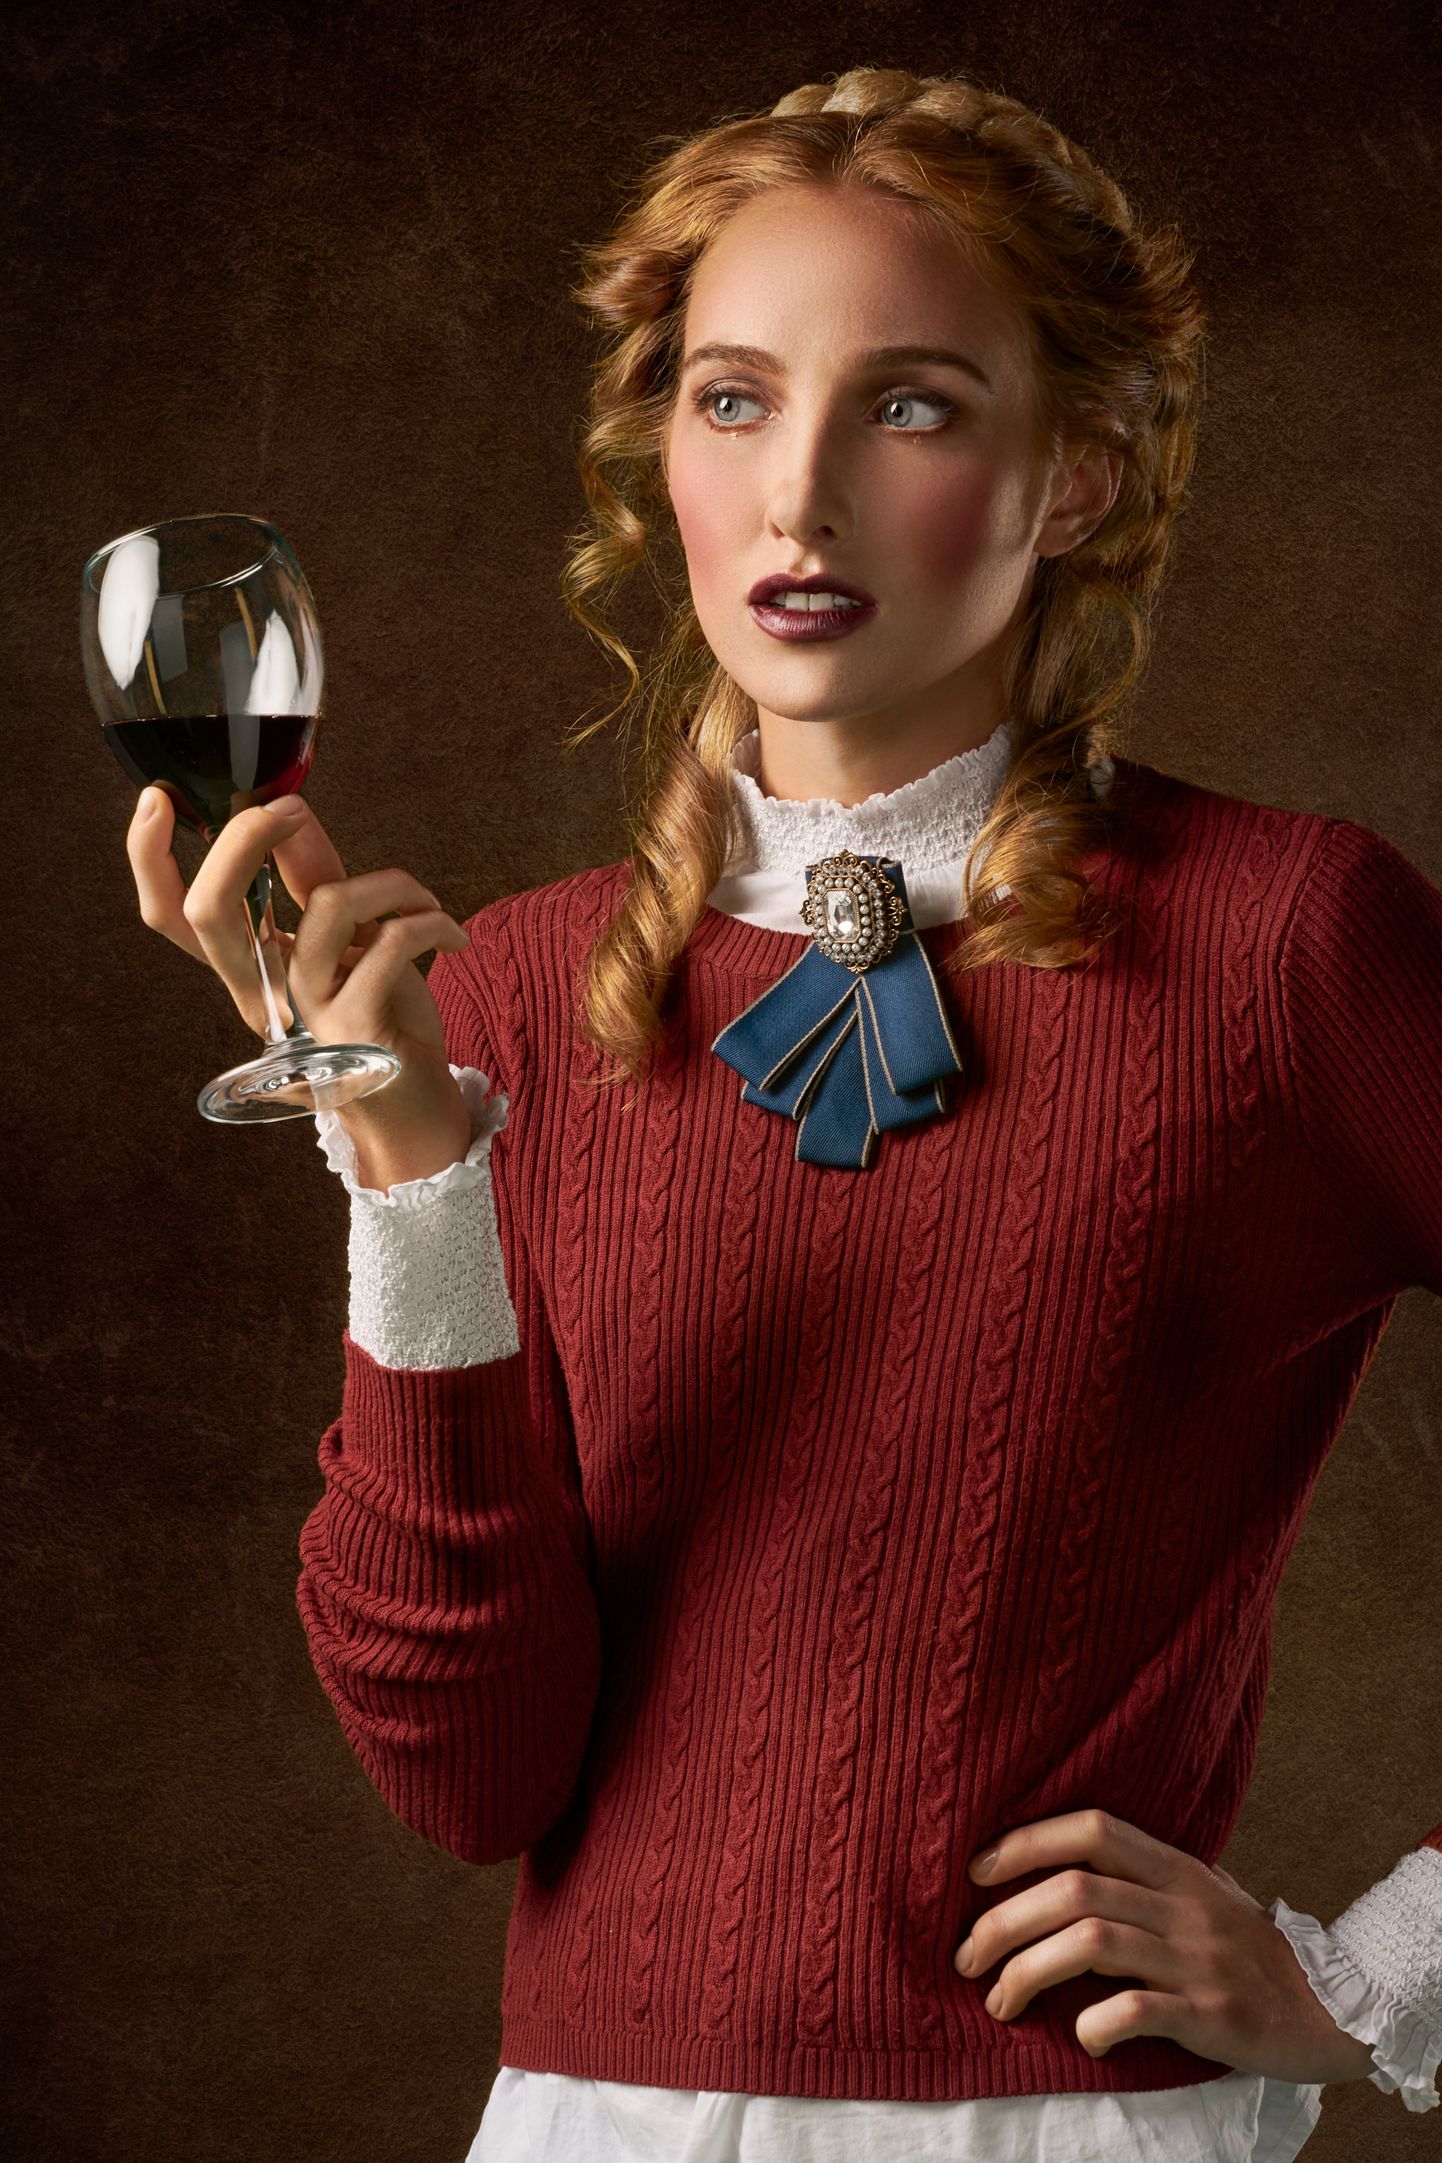 Naine klaasi punase veiniga. Pilt on illustreeriv